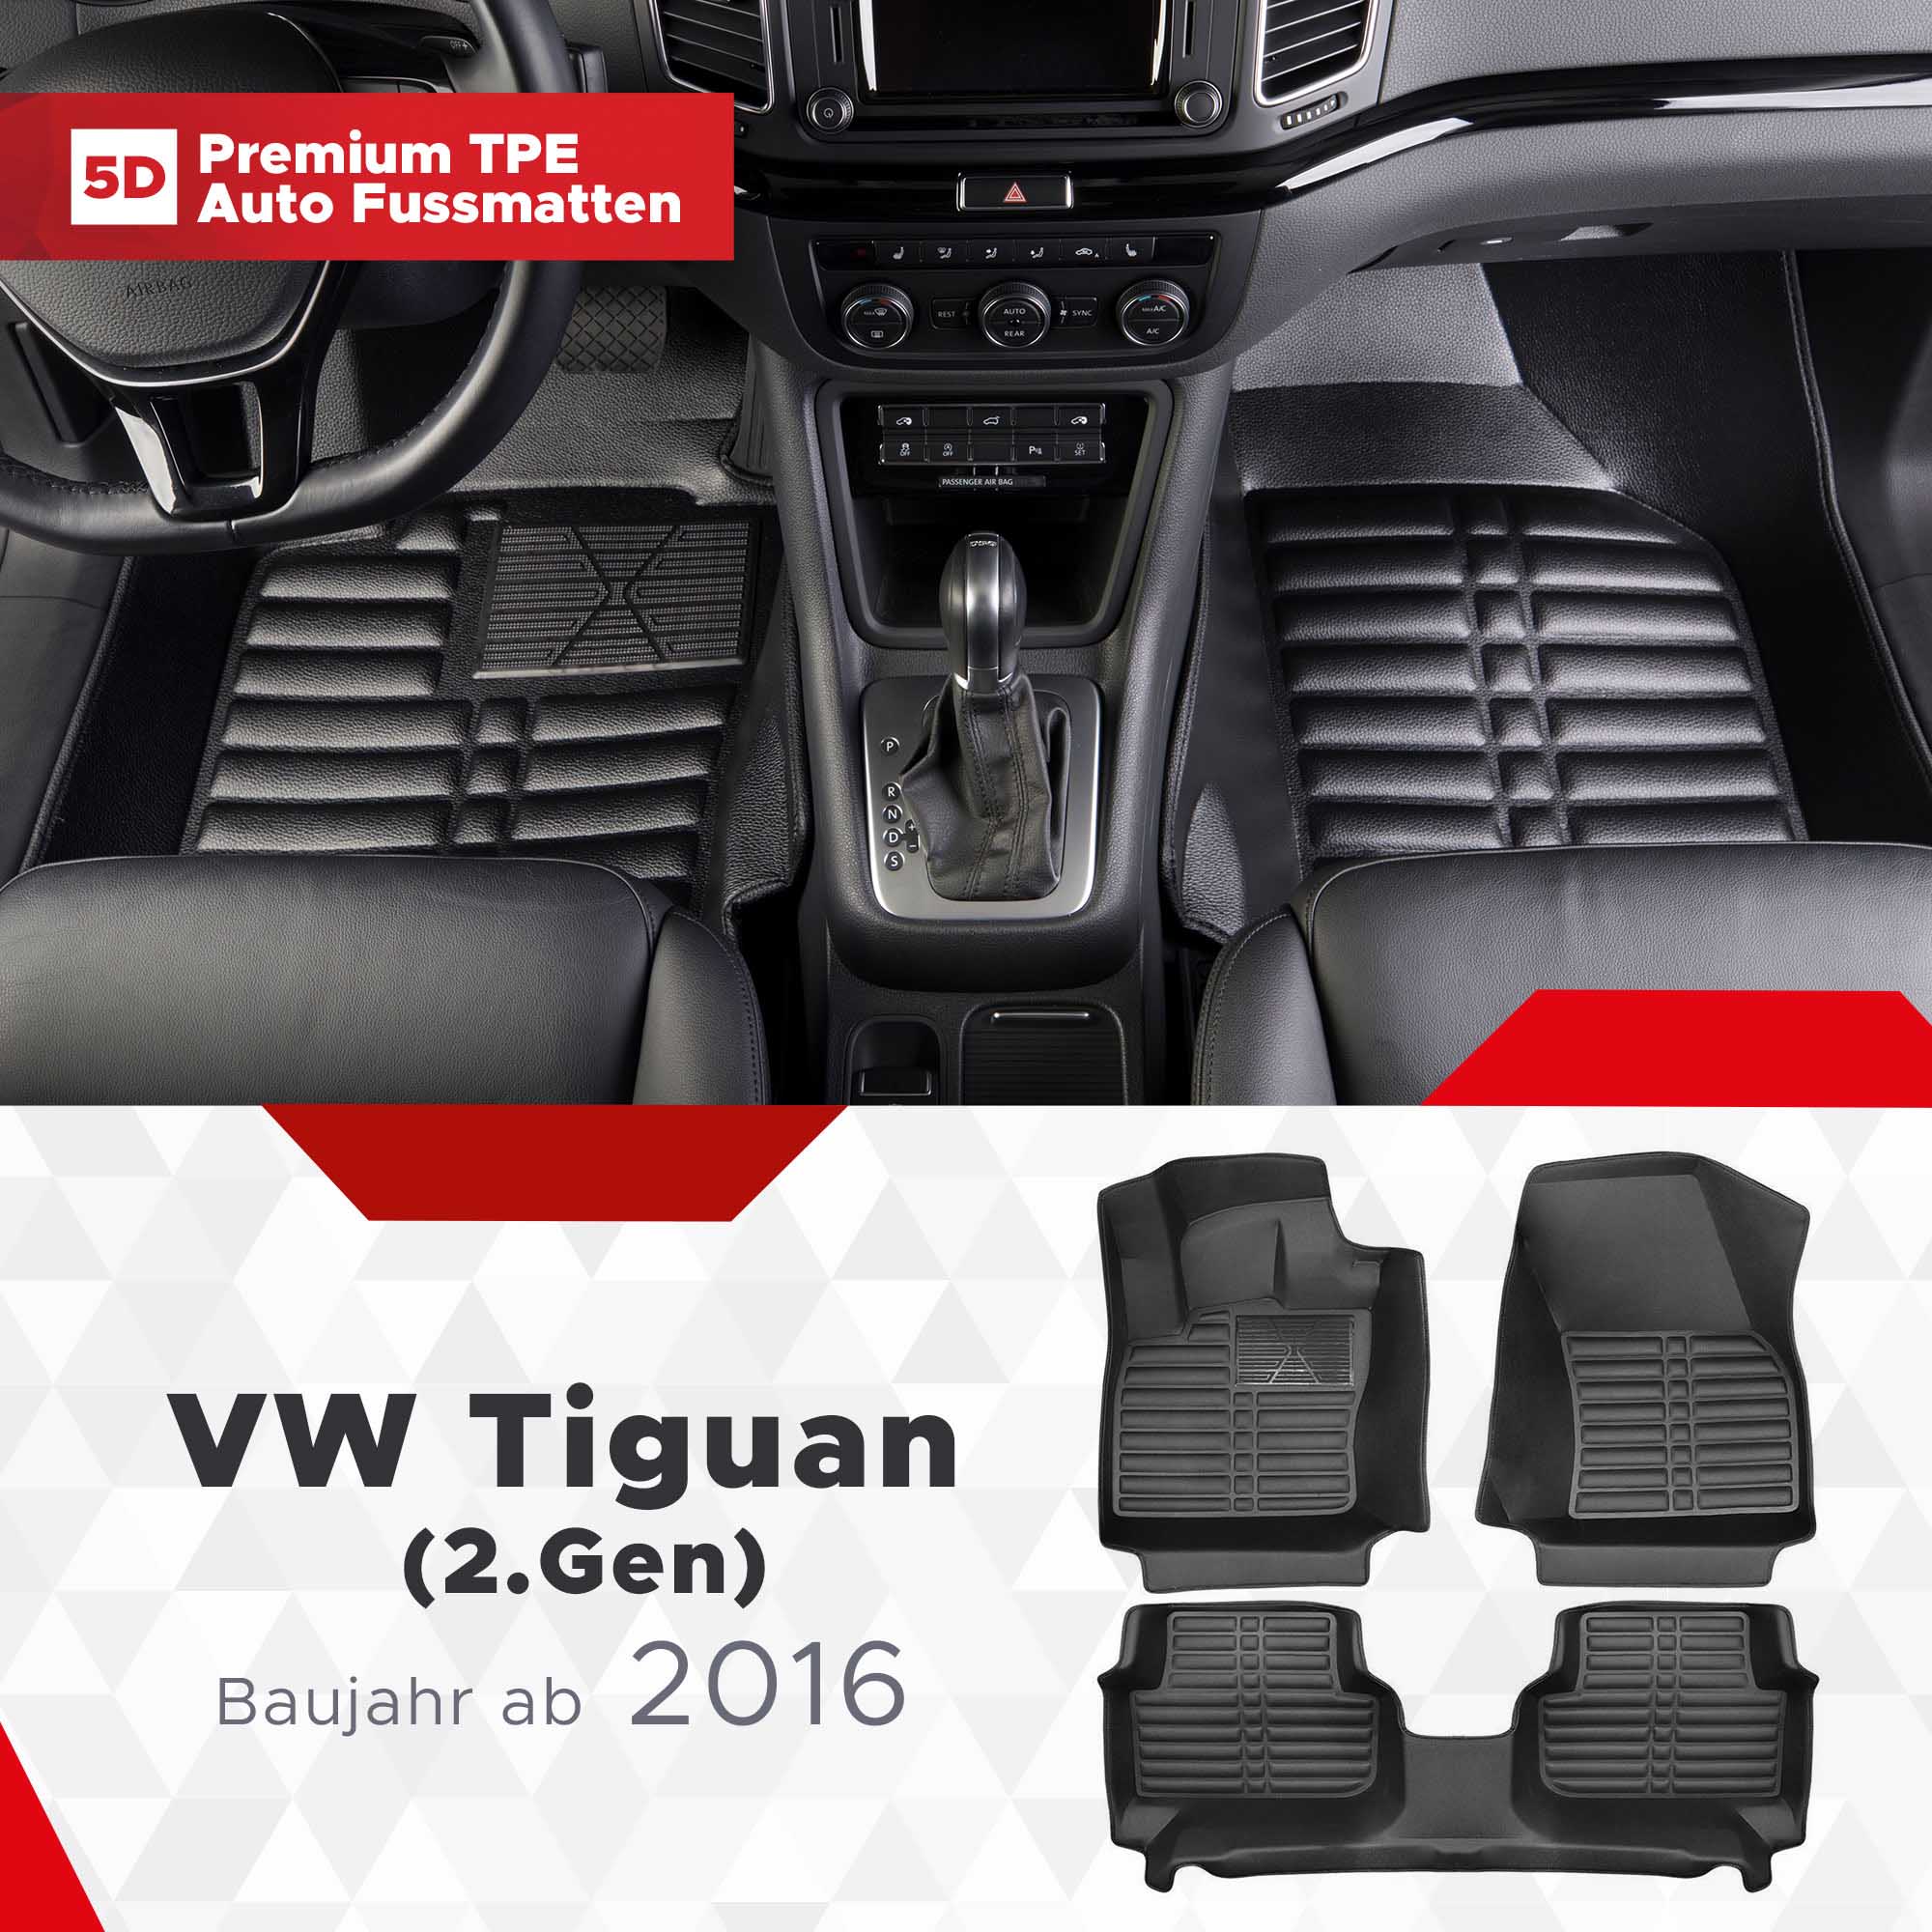 5D VW Tiguan (2.Gen) Fussmatten Bj ab 2016 TPE